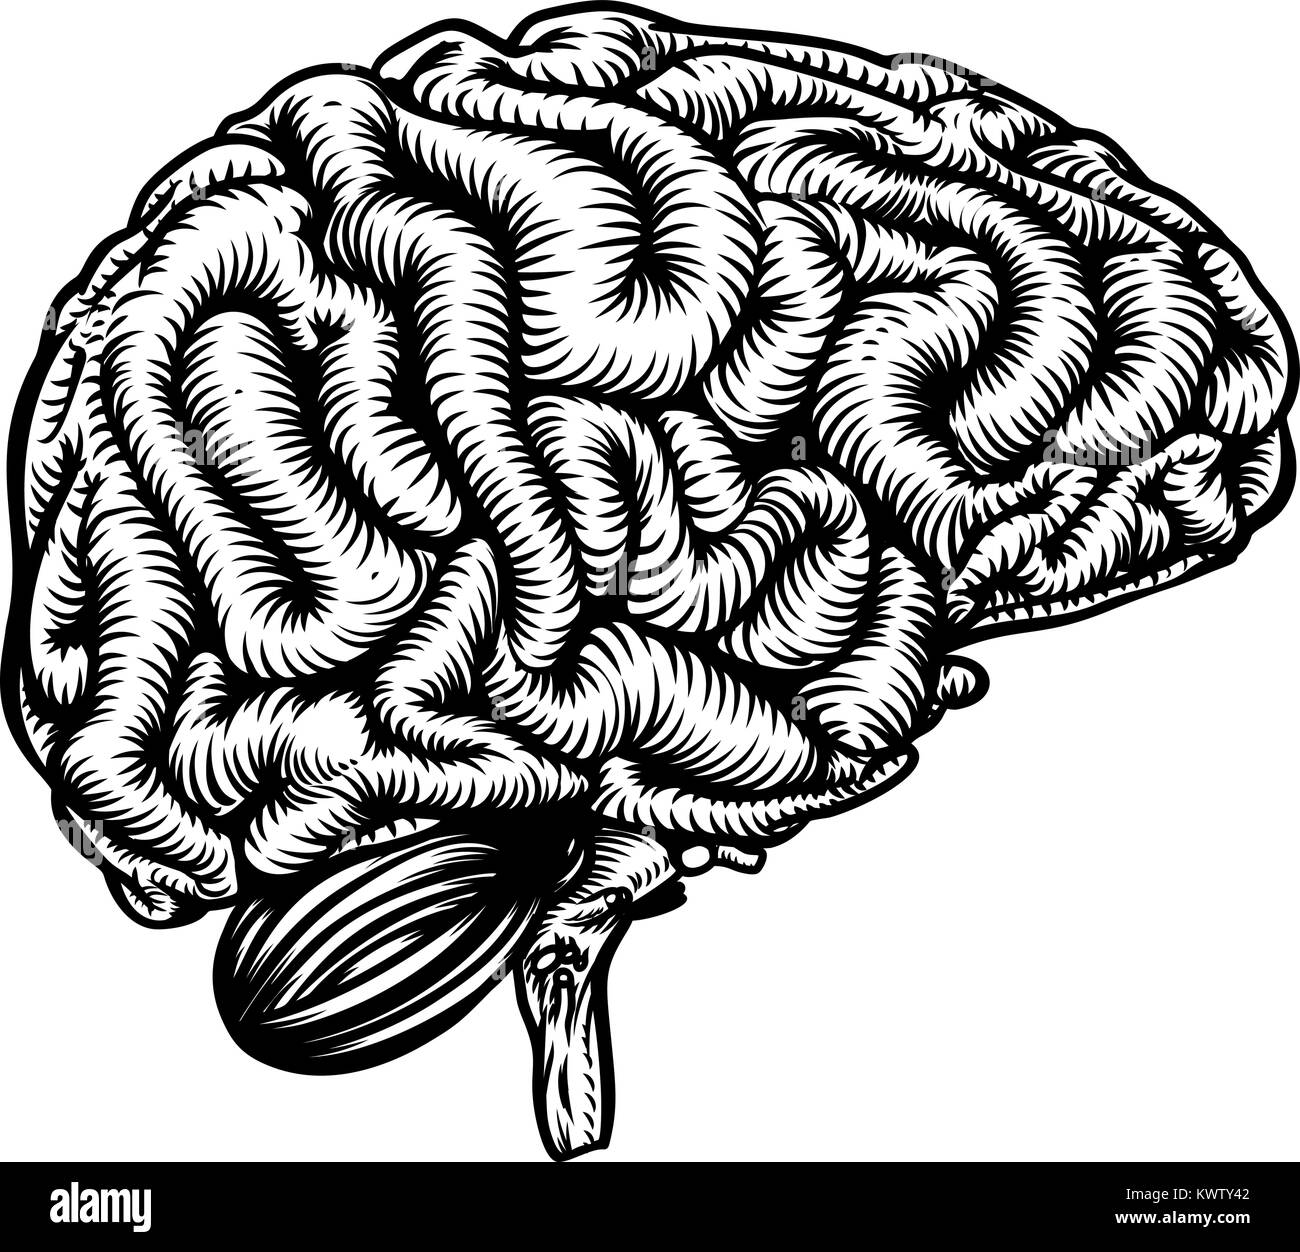 Cervello umano rétro in stile vintage Illustrazione Vettoriale